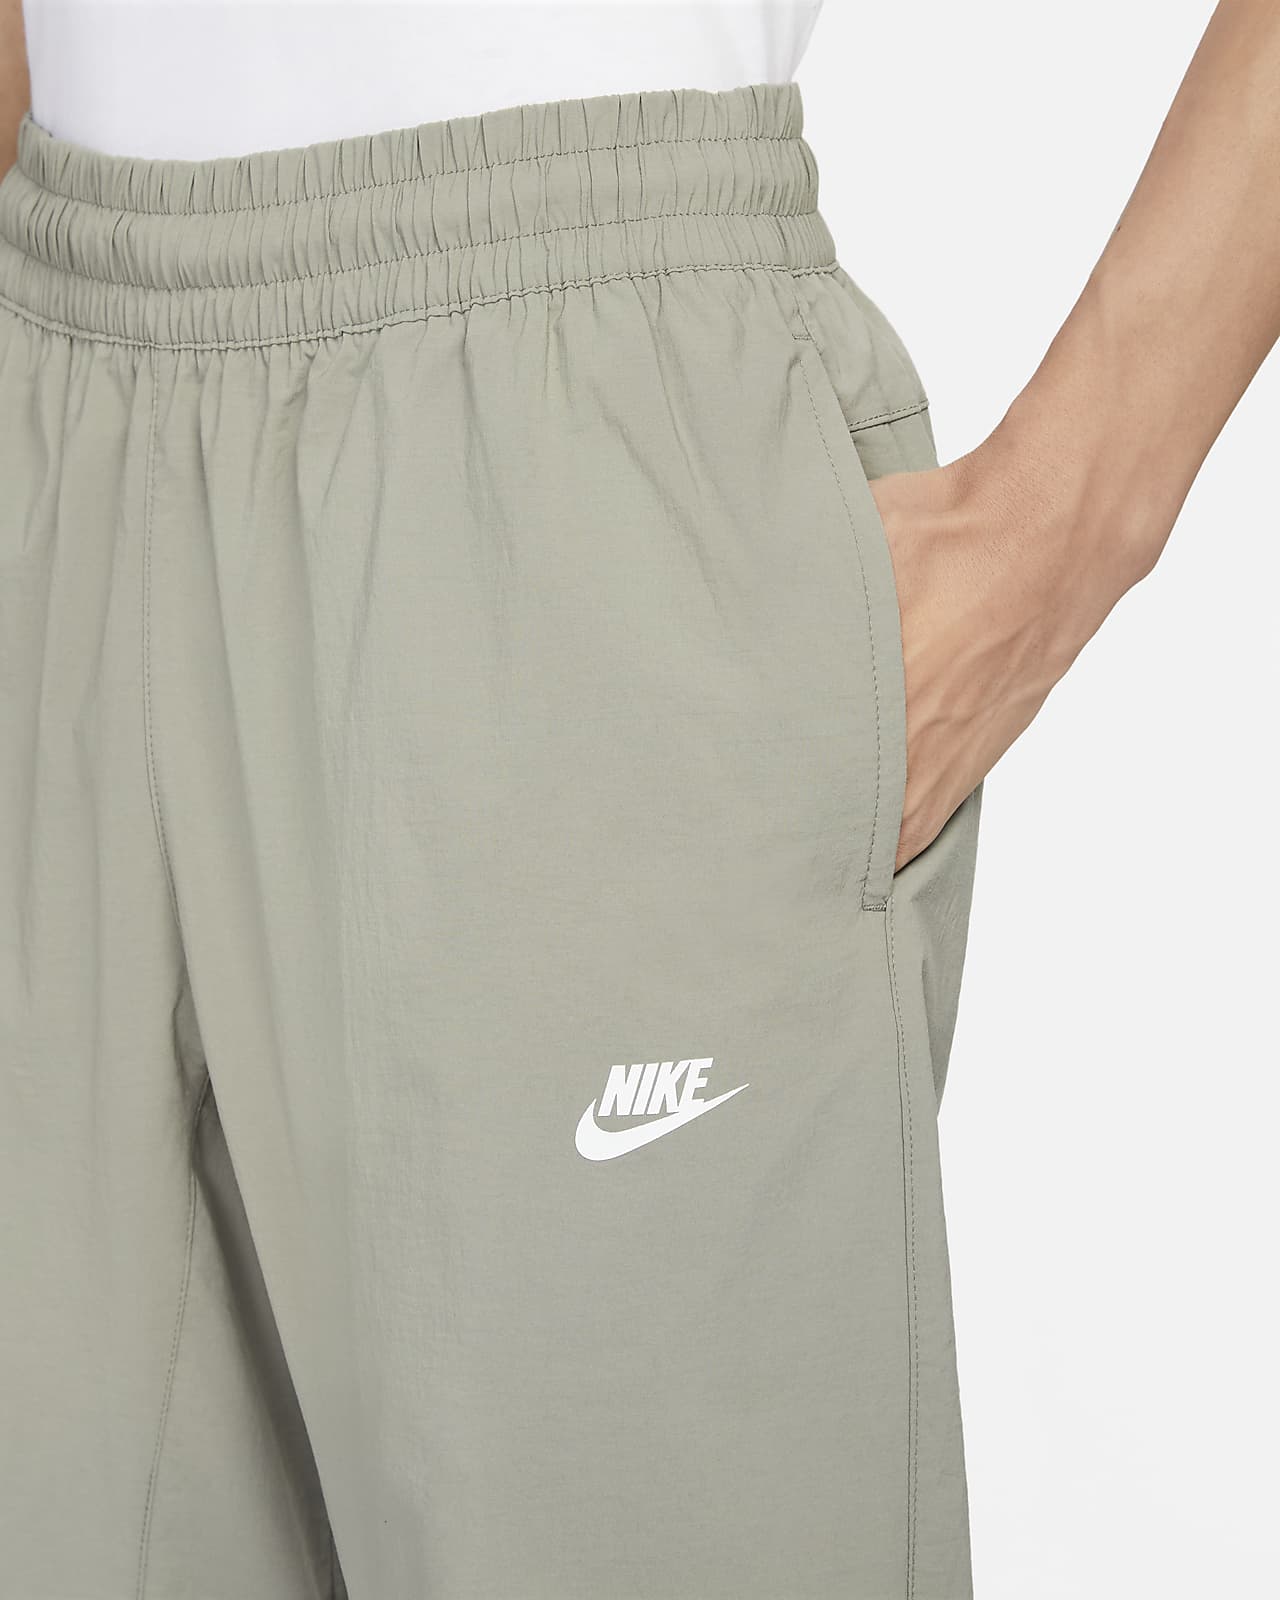 Nike Sportswear Men's Woven Trousers. Nike SG